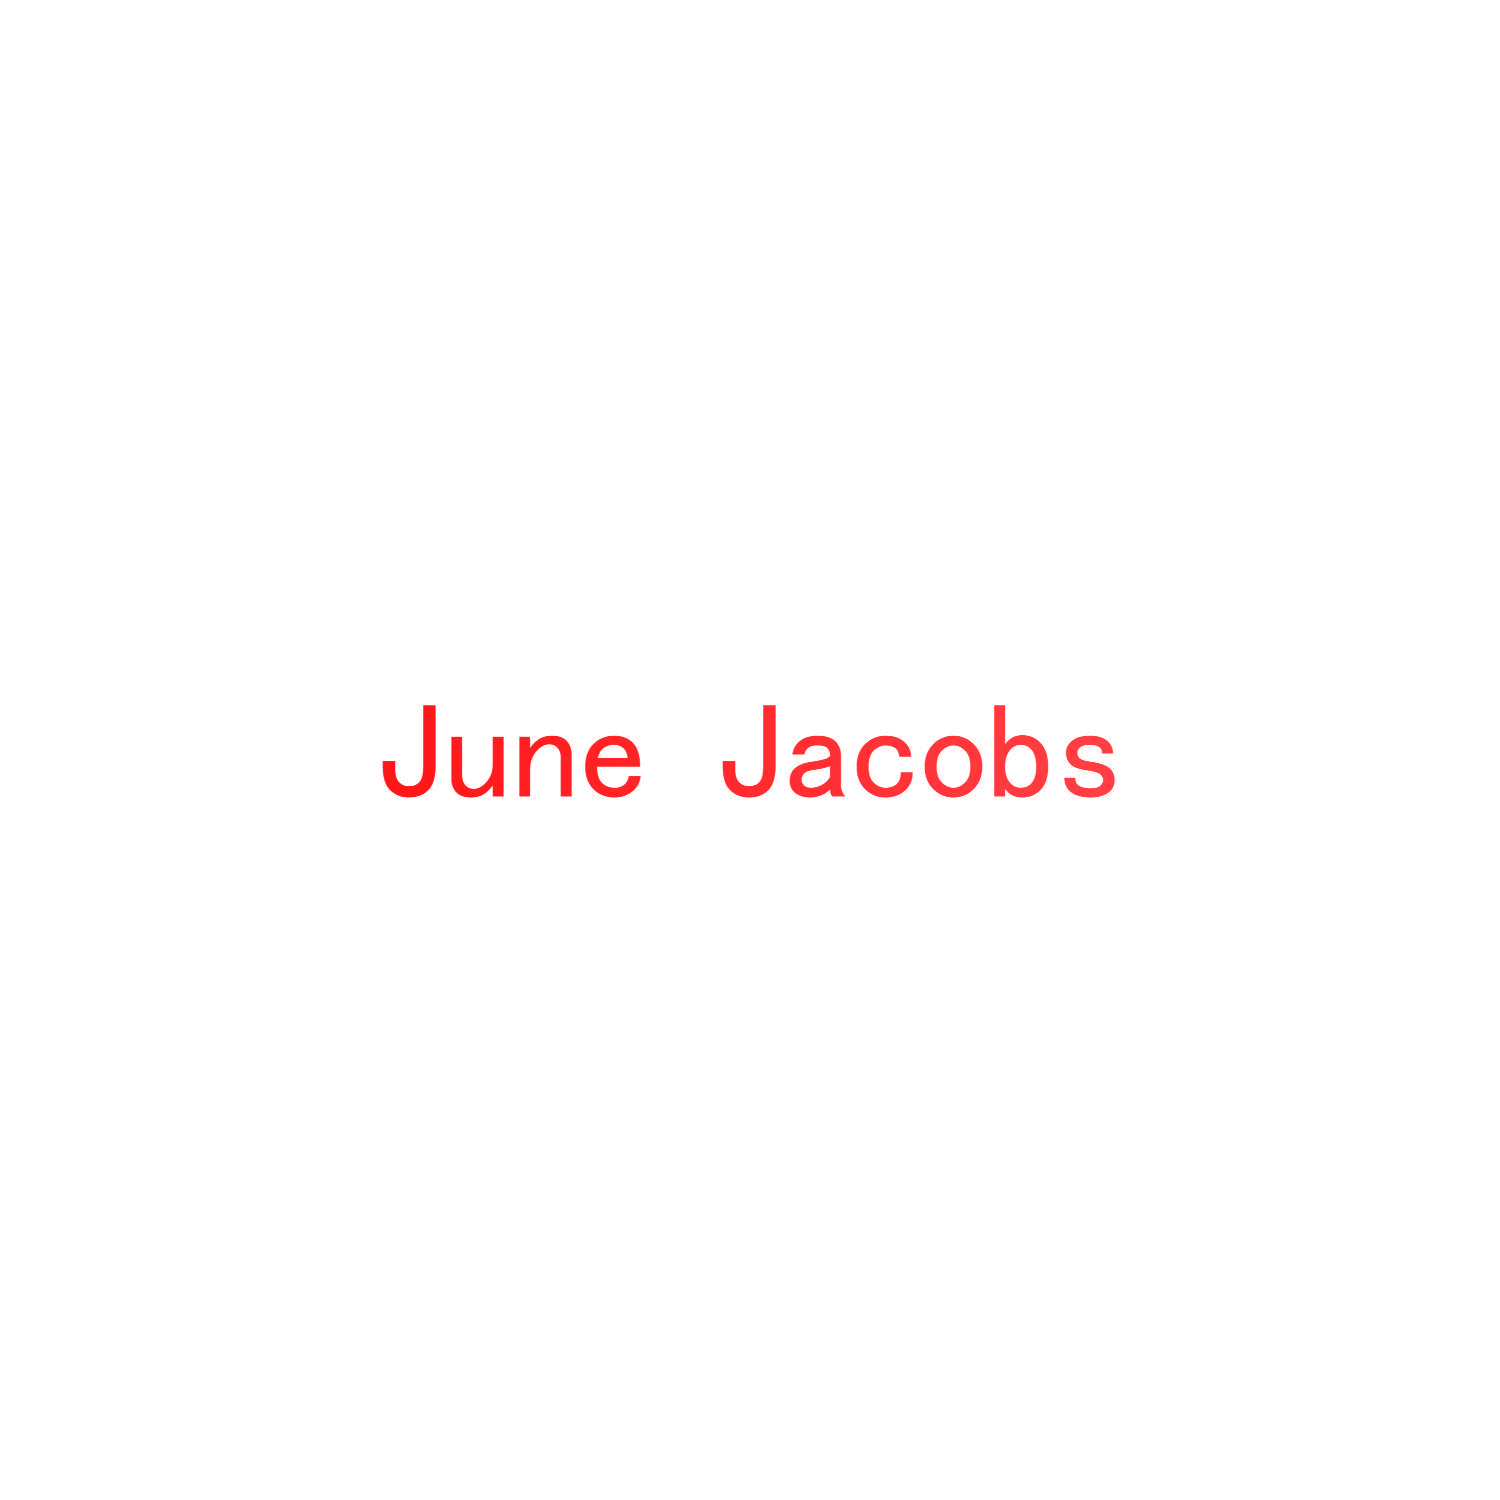 JUNE JACOBS